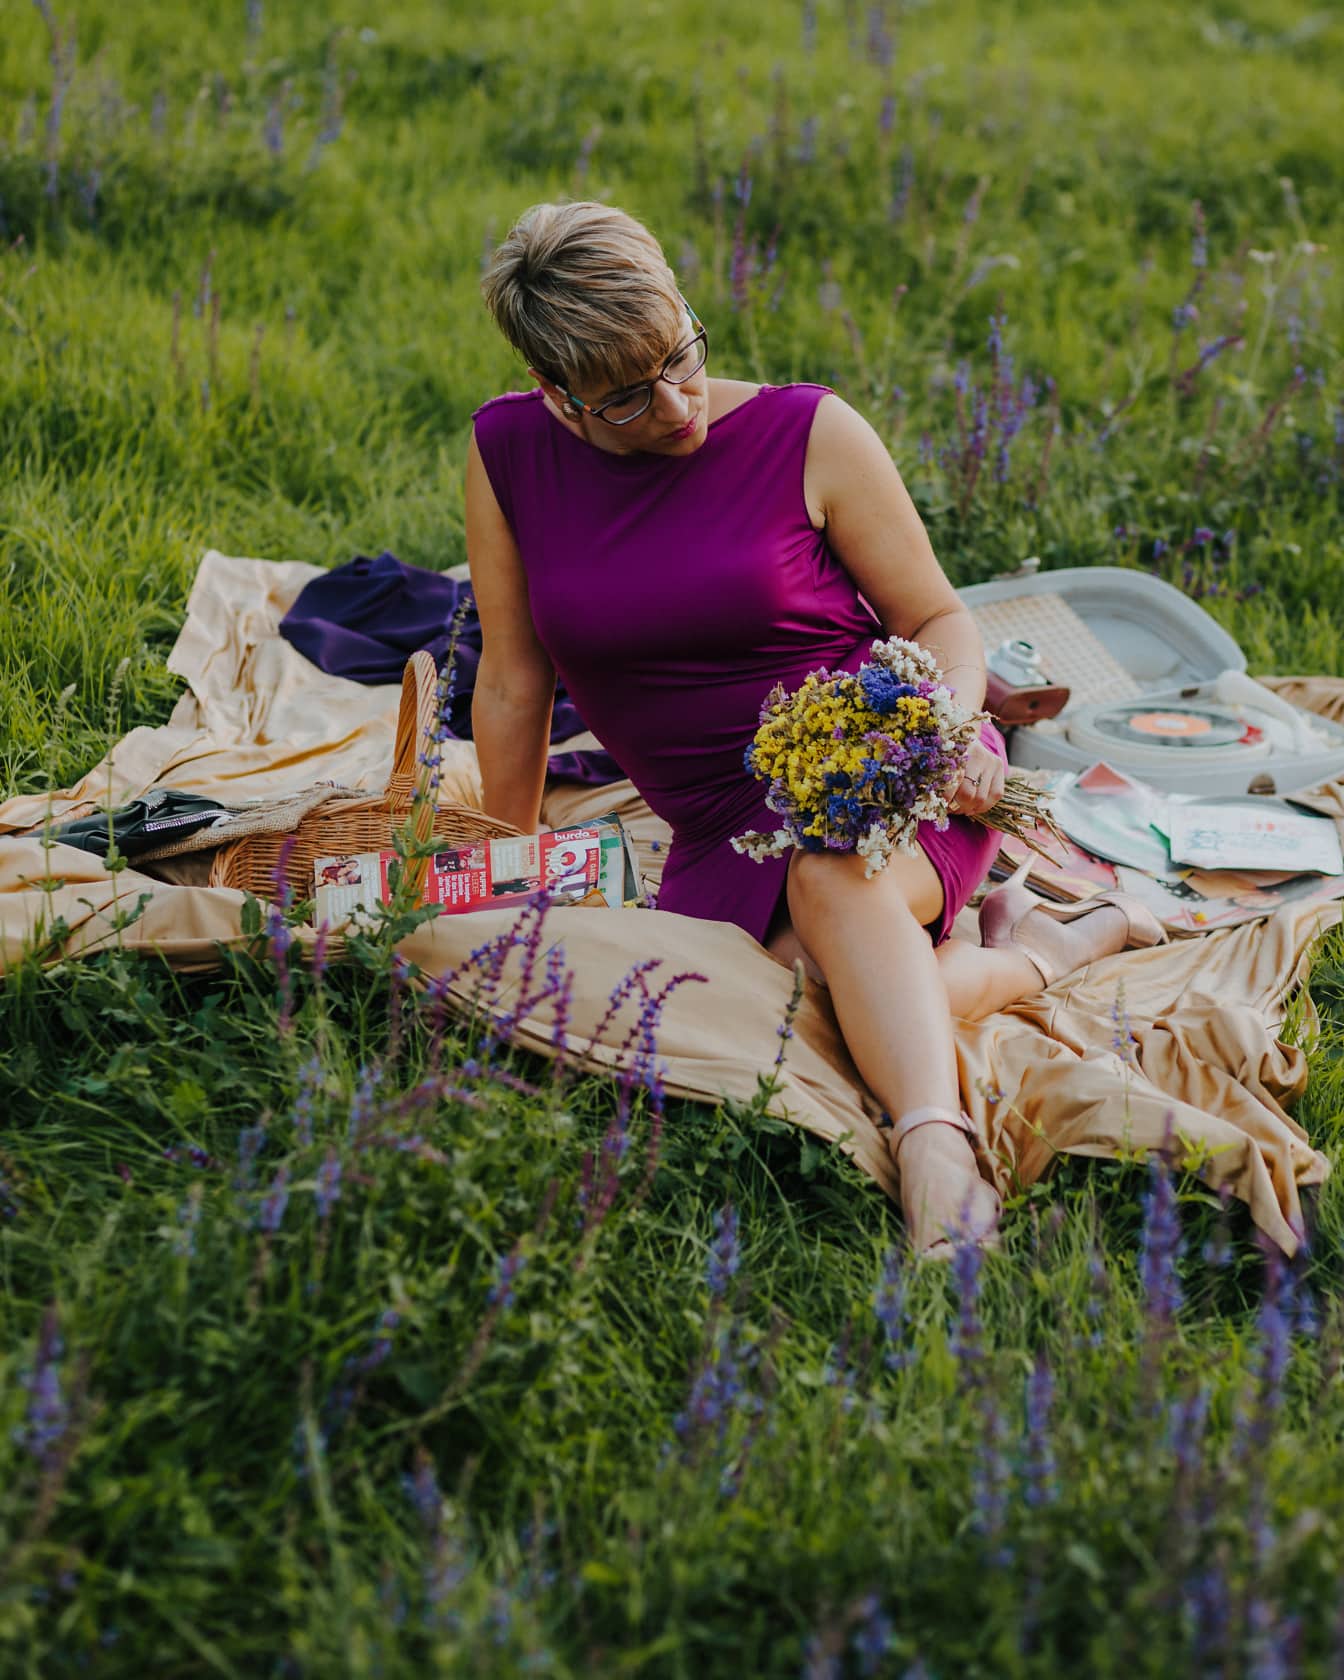 派手な紫色のドレスで素朴なピクニックを楽しんでいるかわいい女性